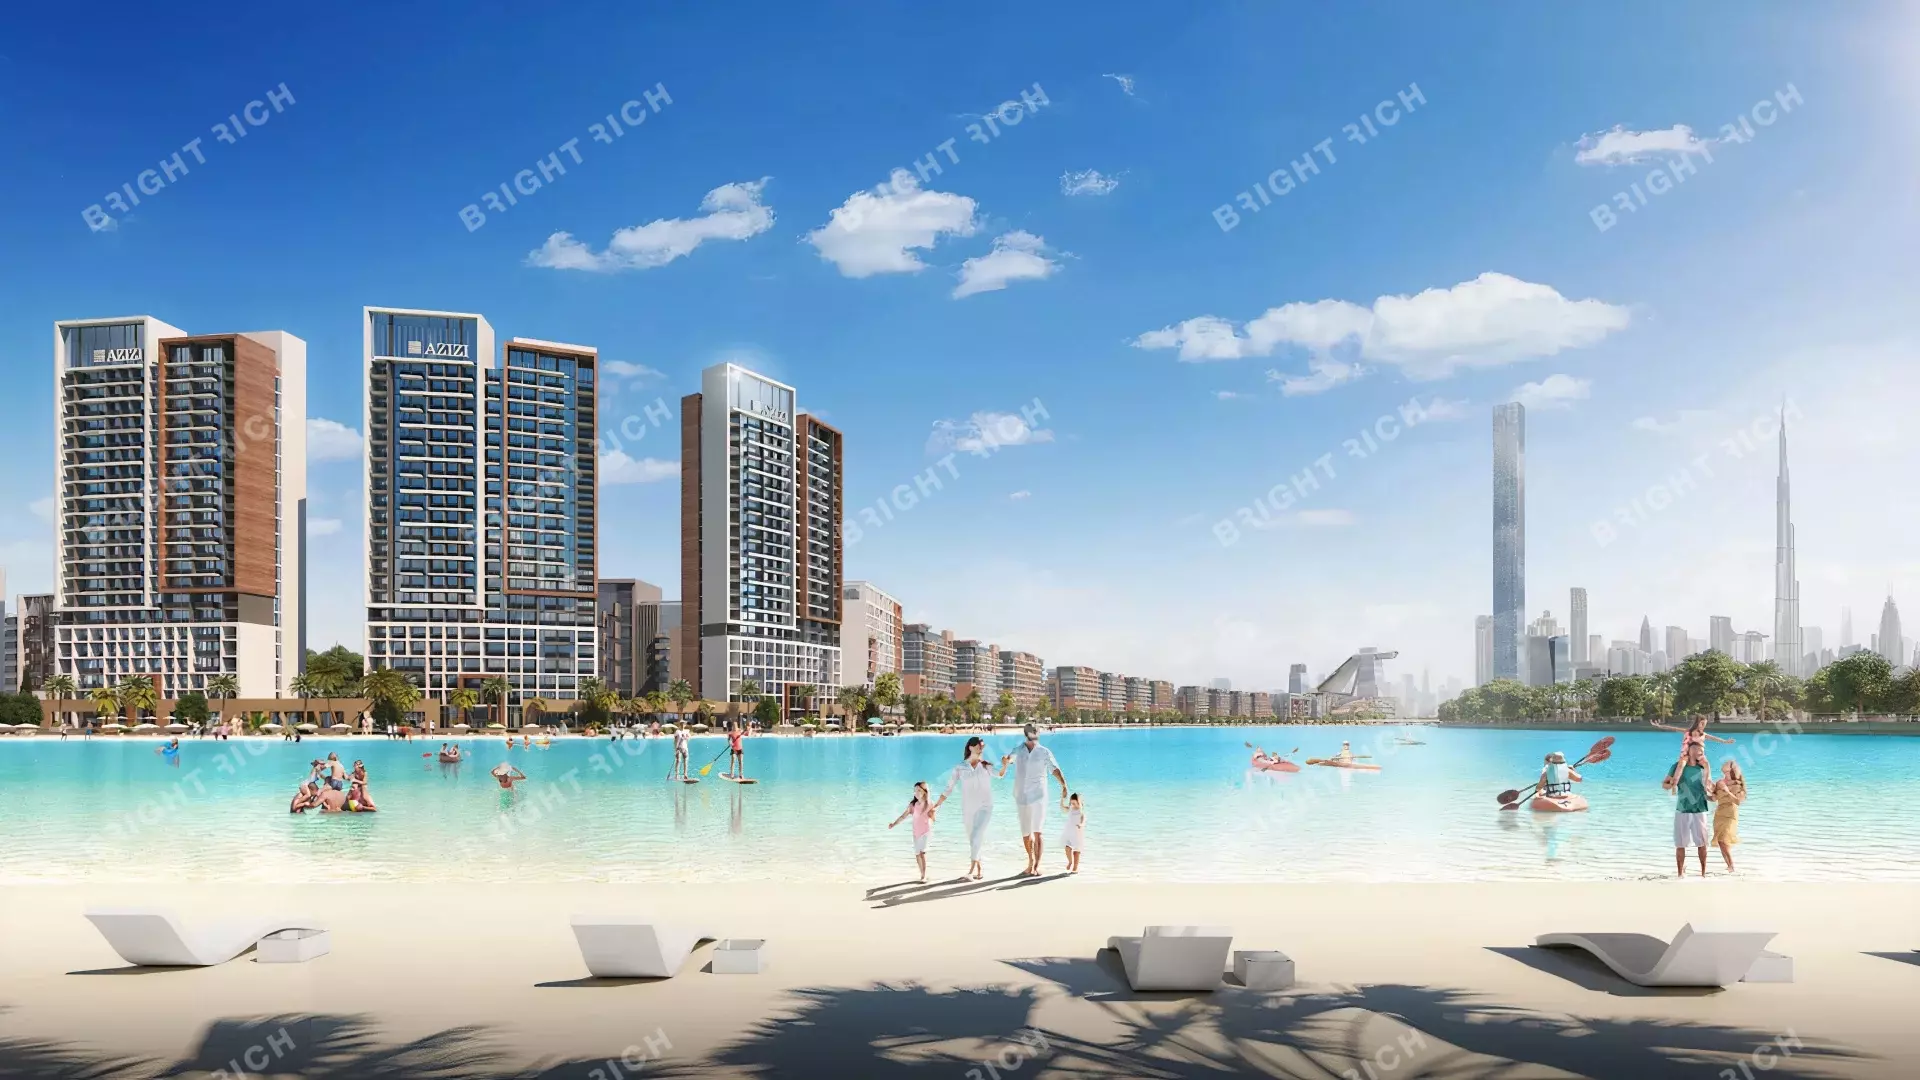 Azizi Riviera Building 8, apart complex in Dubai - 1